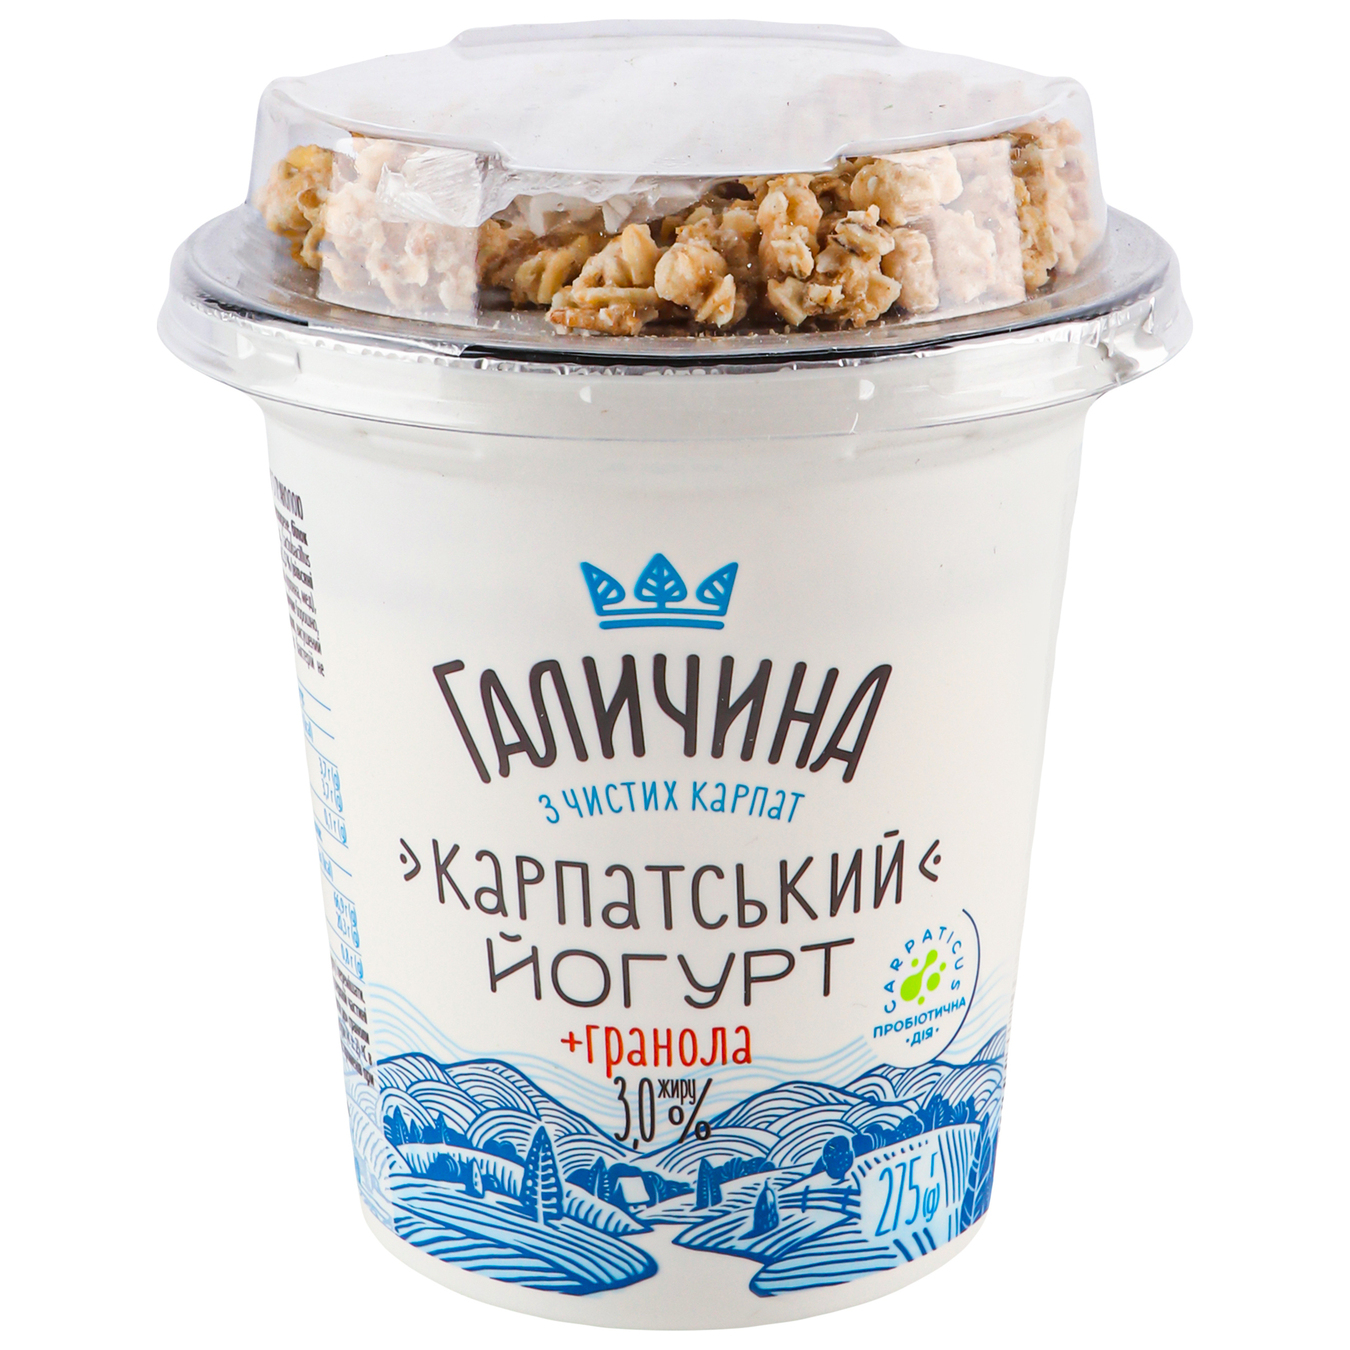 Galychyna Carpathian Sugar-Free Granola Flavored Yogurt 3% 275g 2